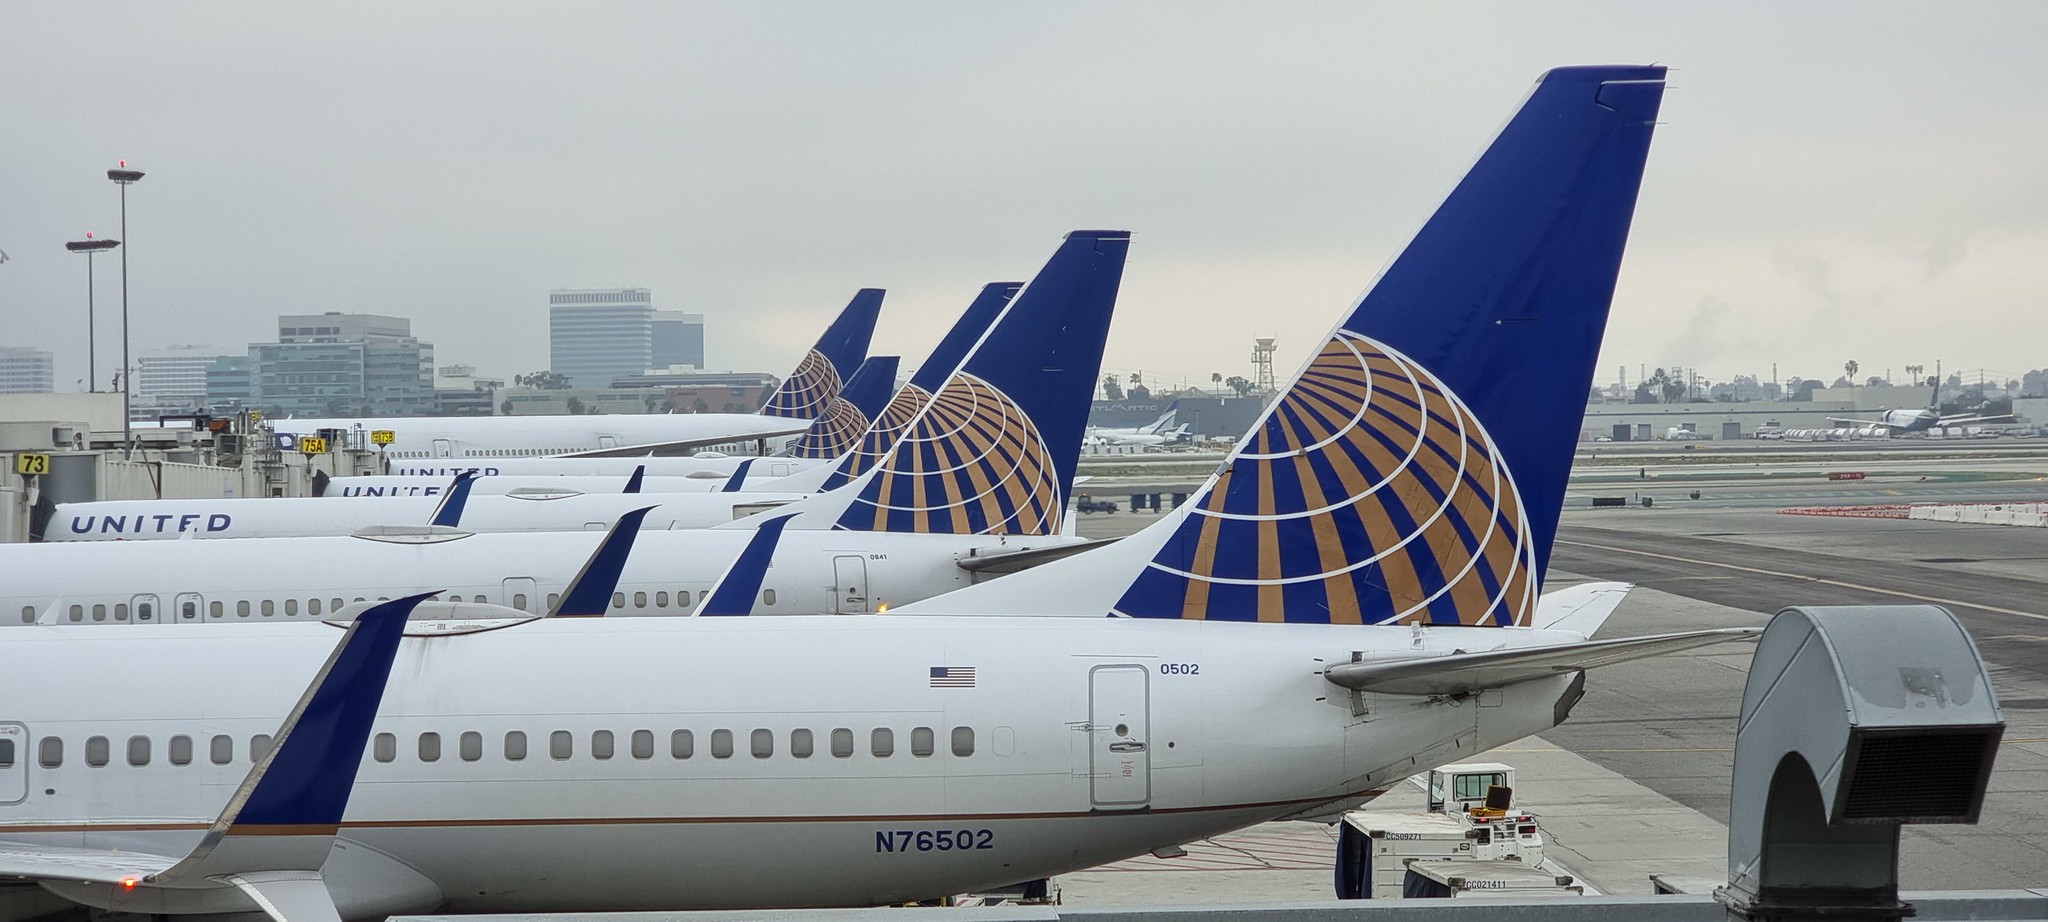 United aircraft lined up at gates at T7 at LAX